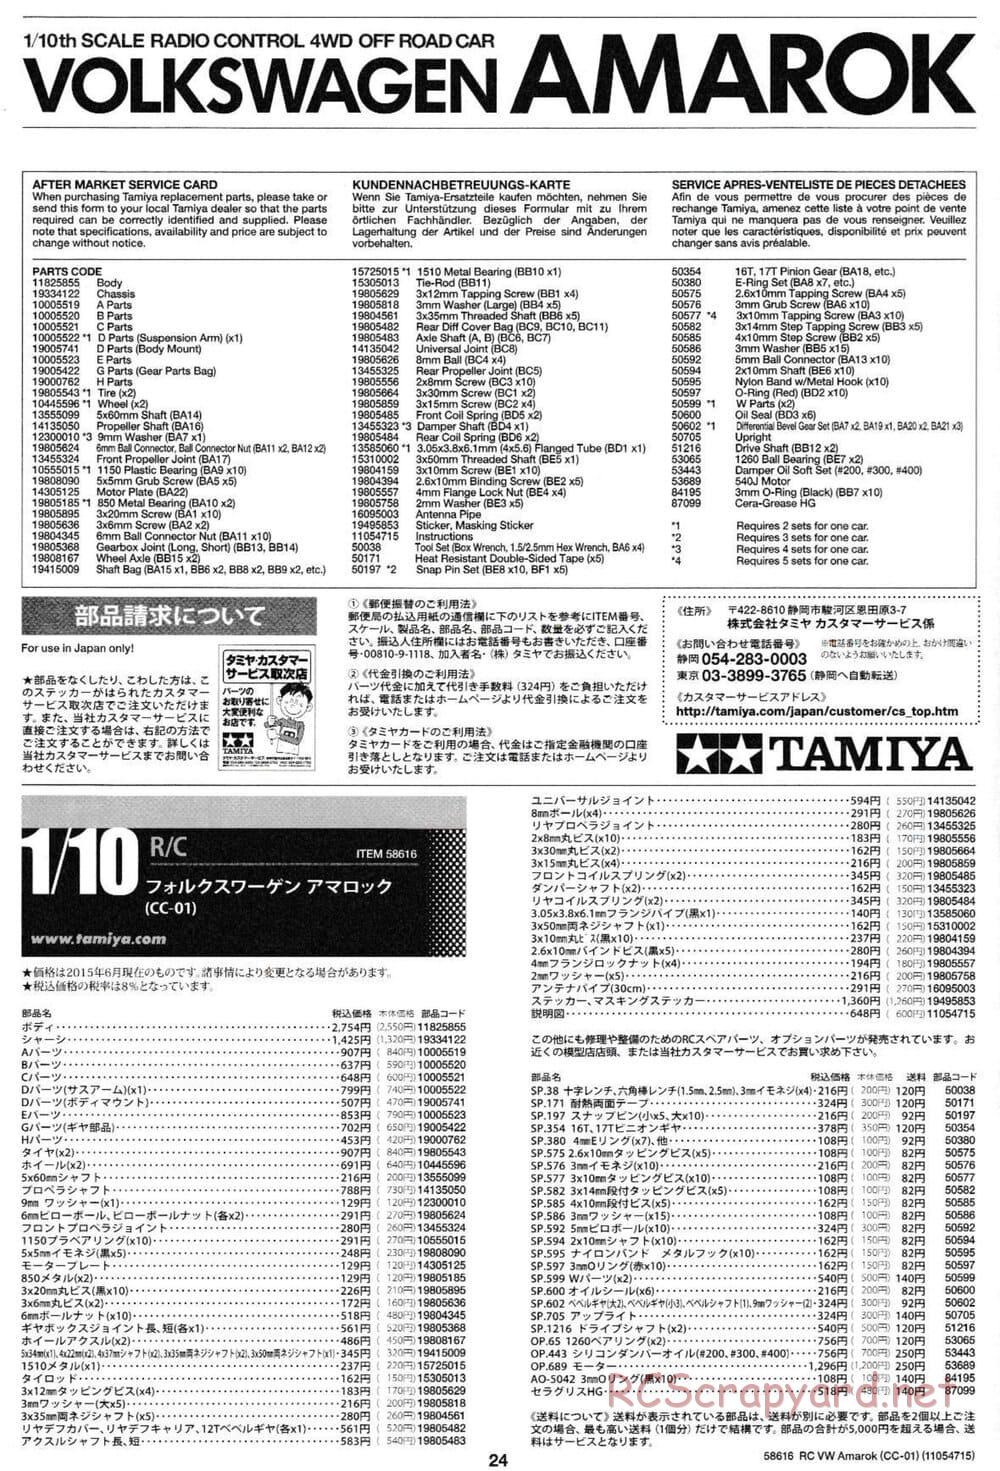 Tamiya - Volkswagen Amarok - CC-01 Chassis - Manual - Page 24